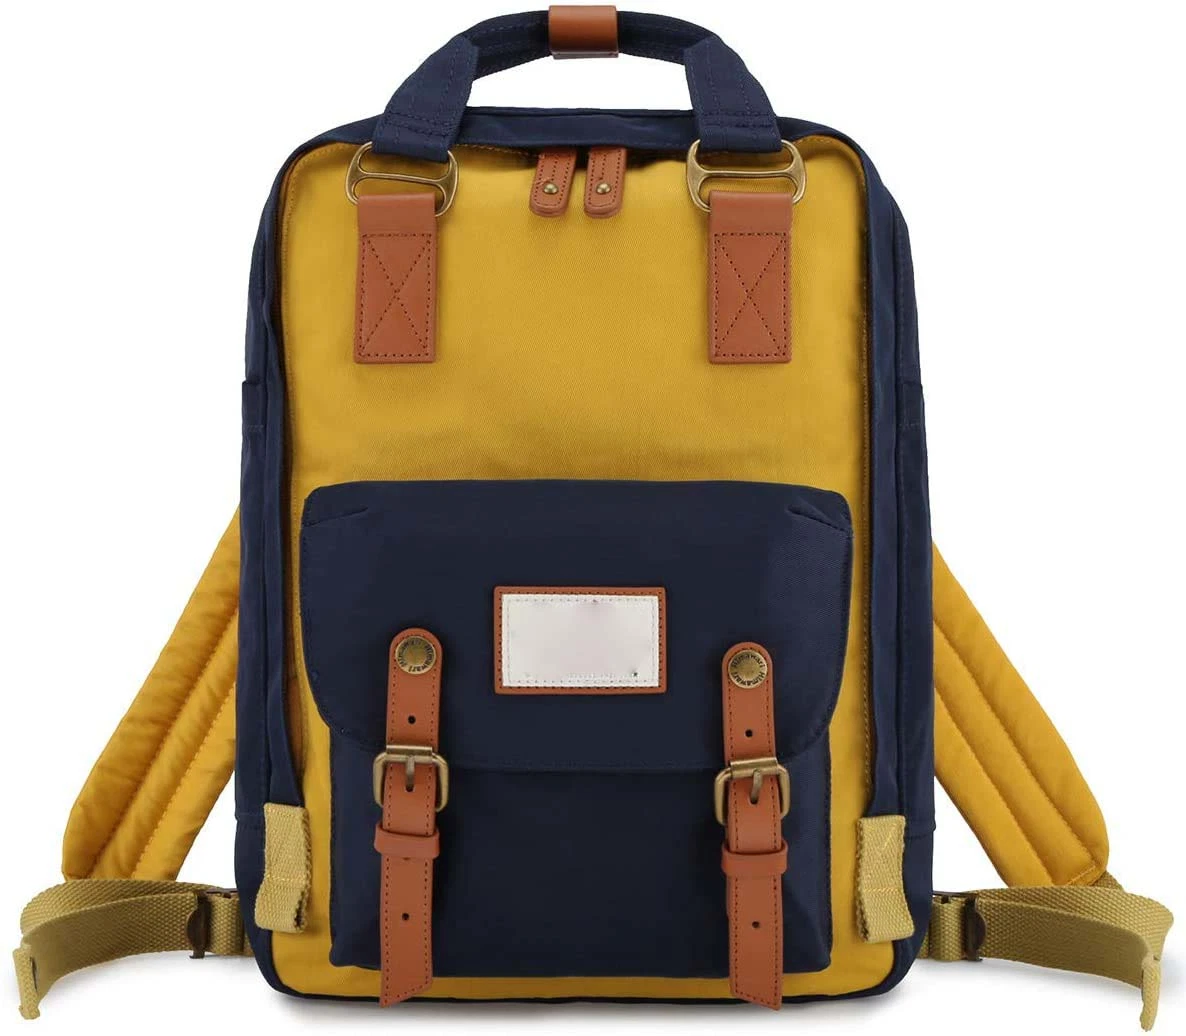 School Functional Travel Waterproof Backpack Bag